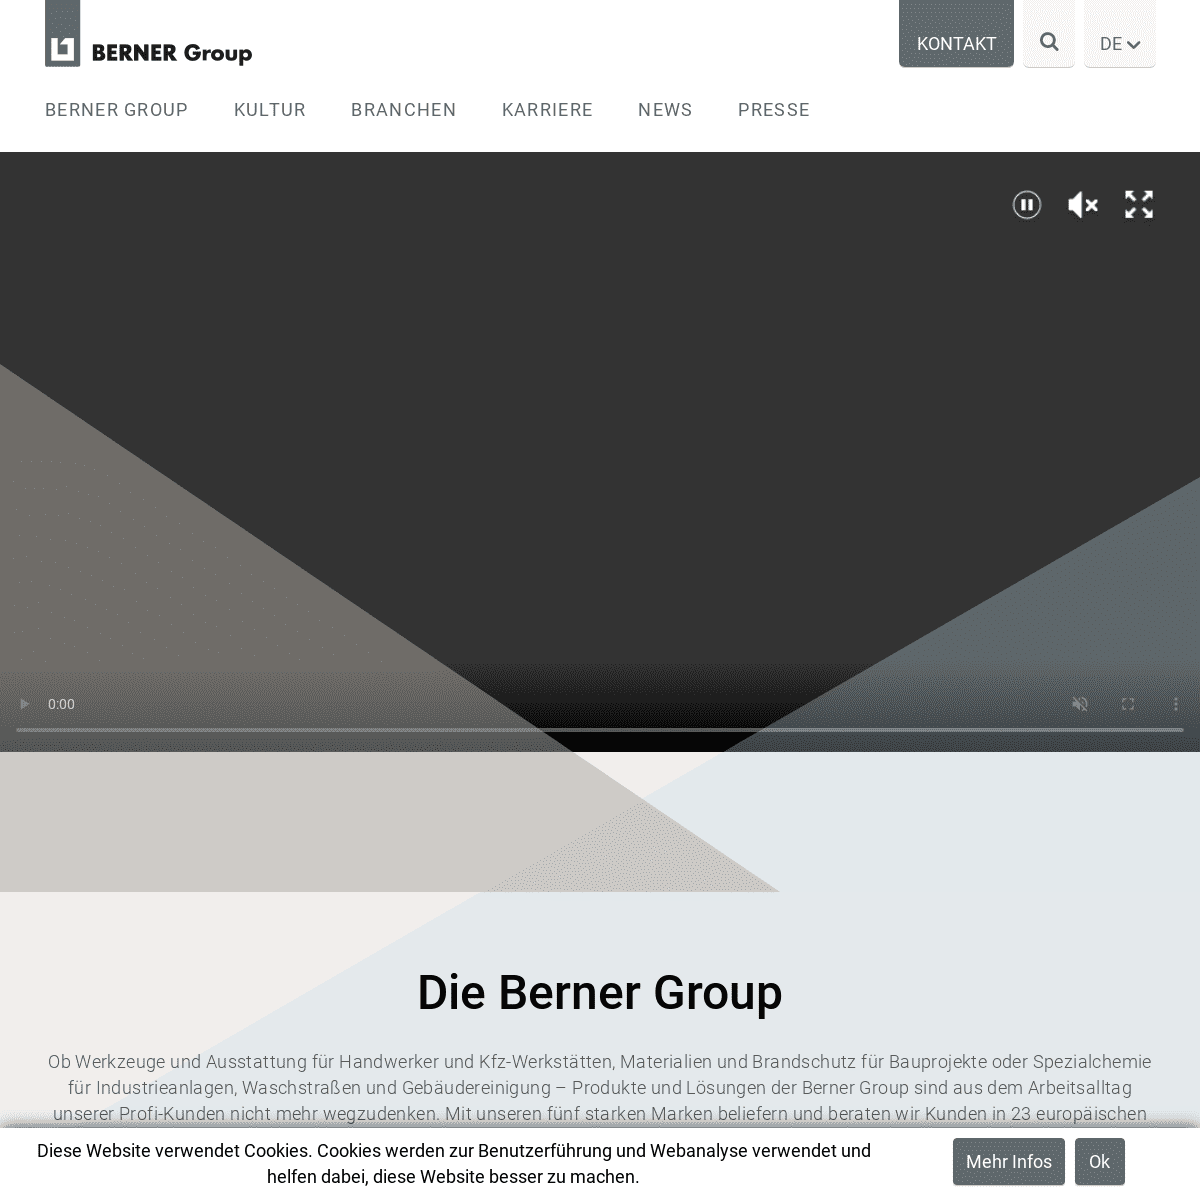 A complete backup of berner-group.com